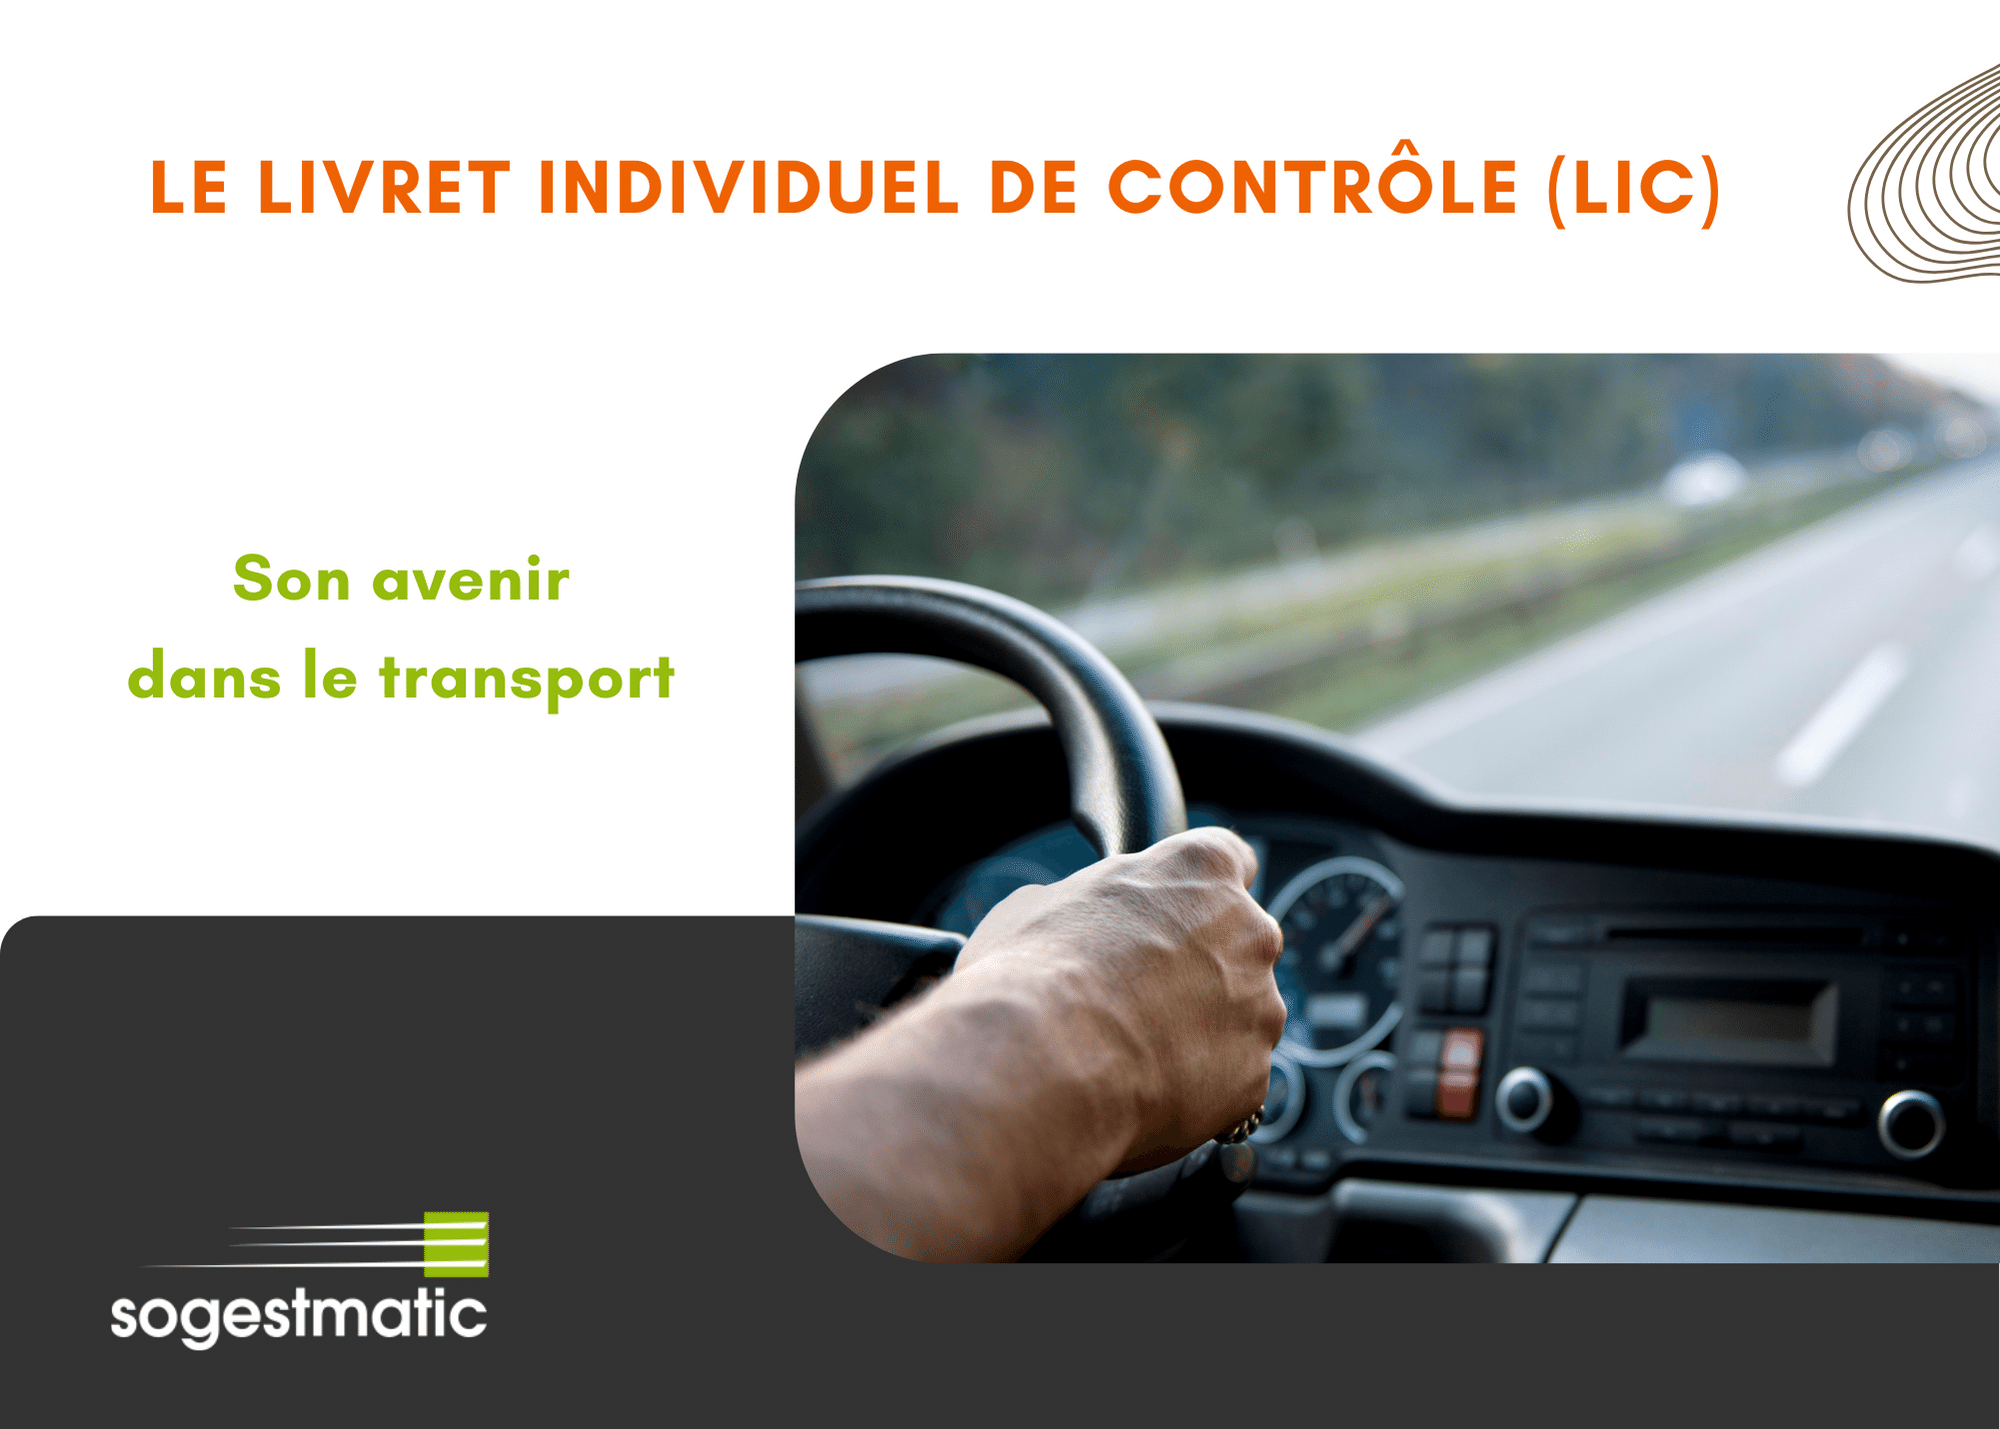 Le Livret Individuel de Contrôle (LIC) et son avenir dans le transport